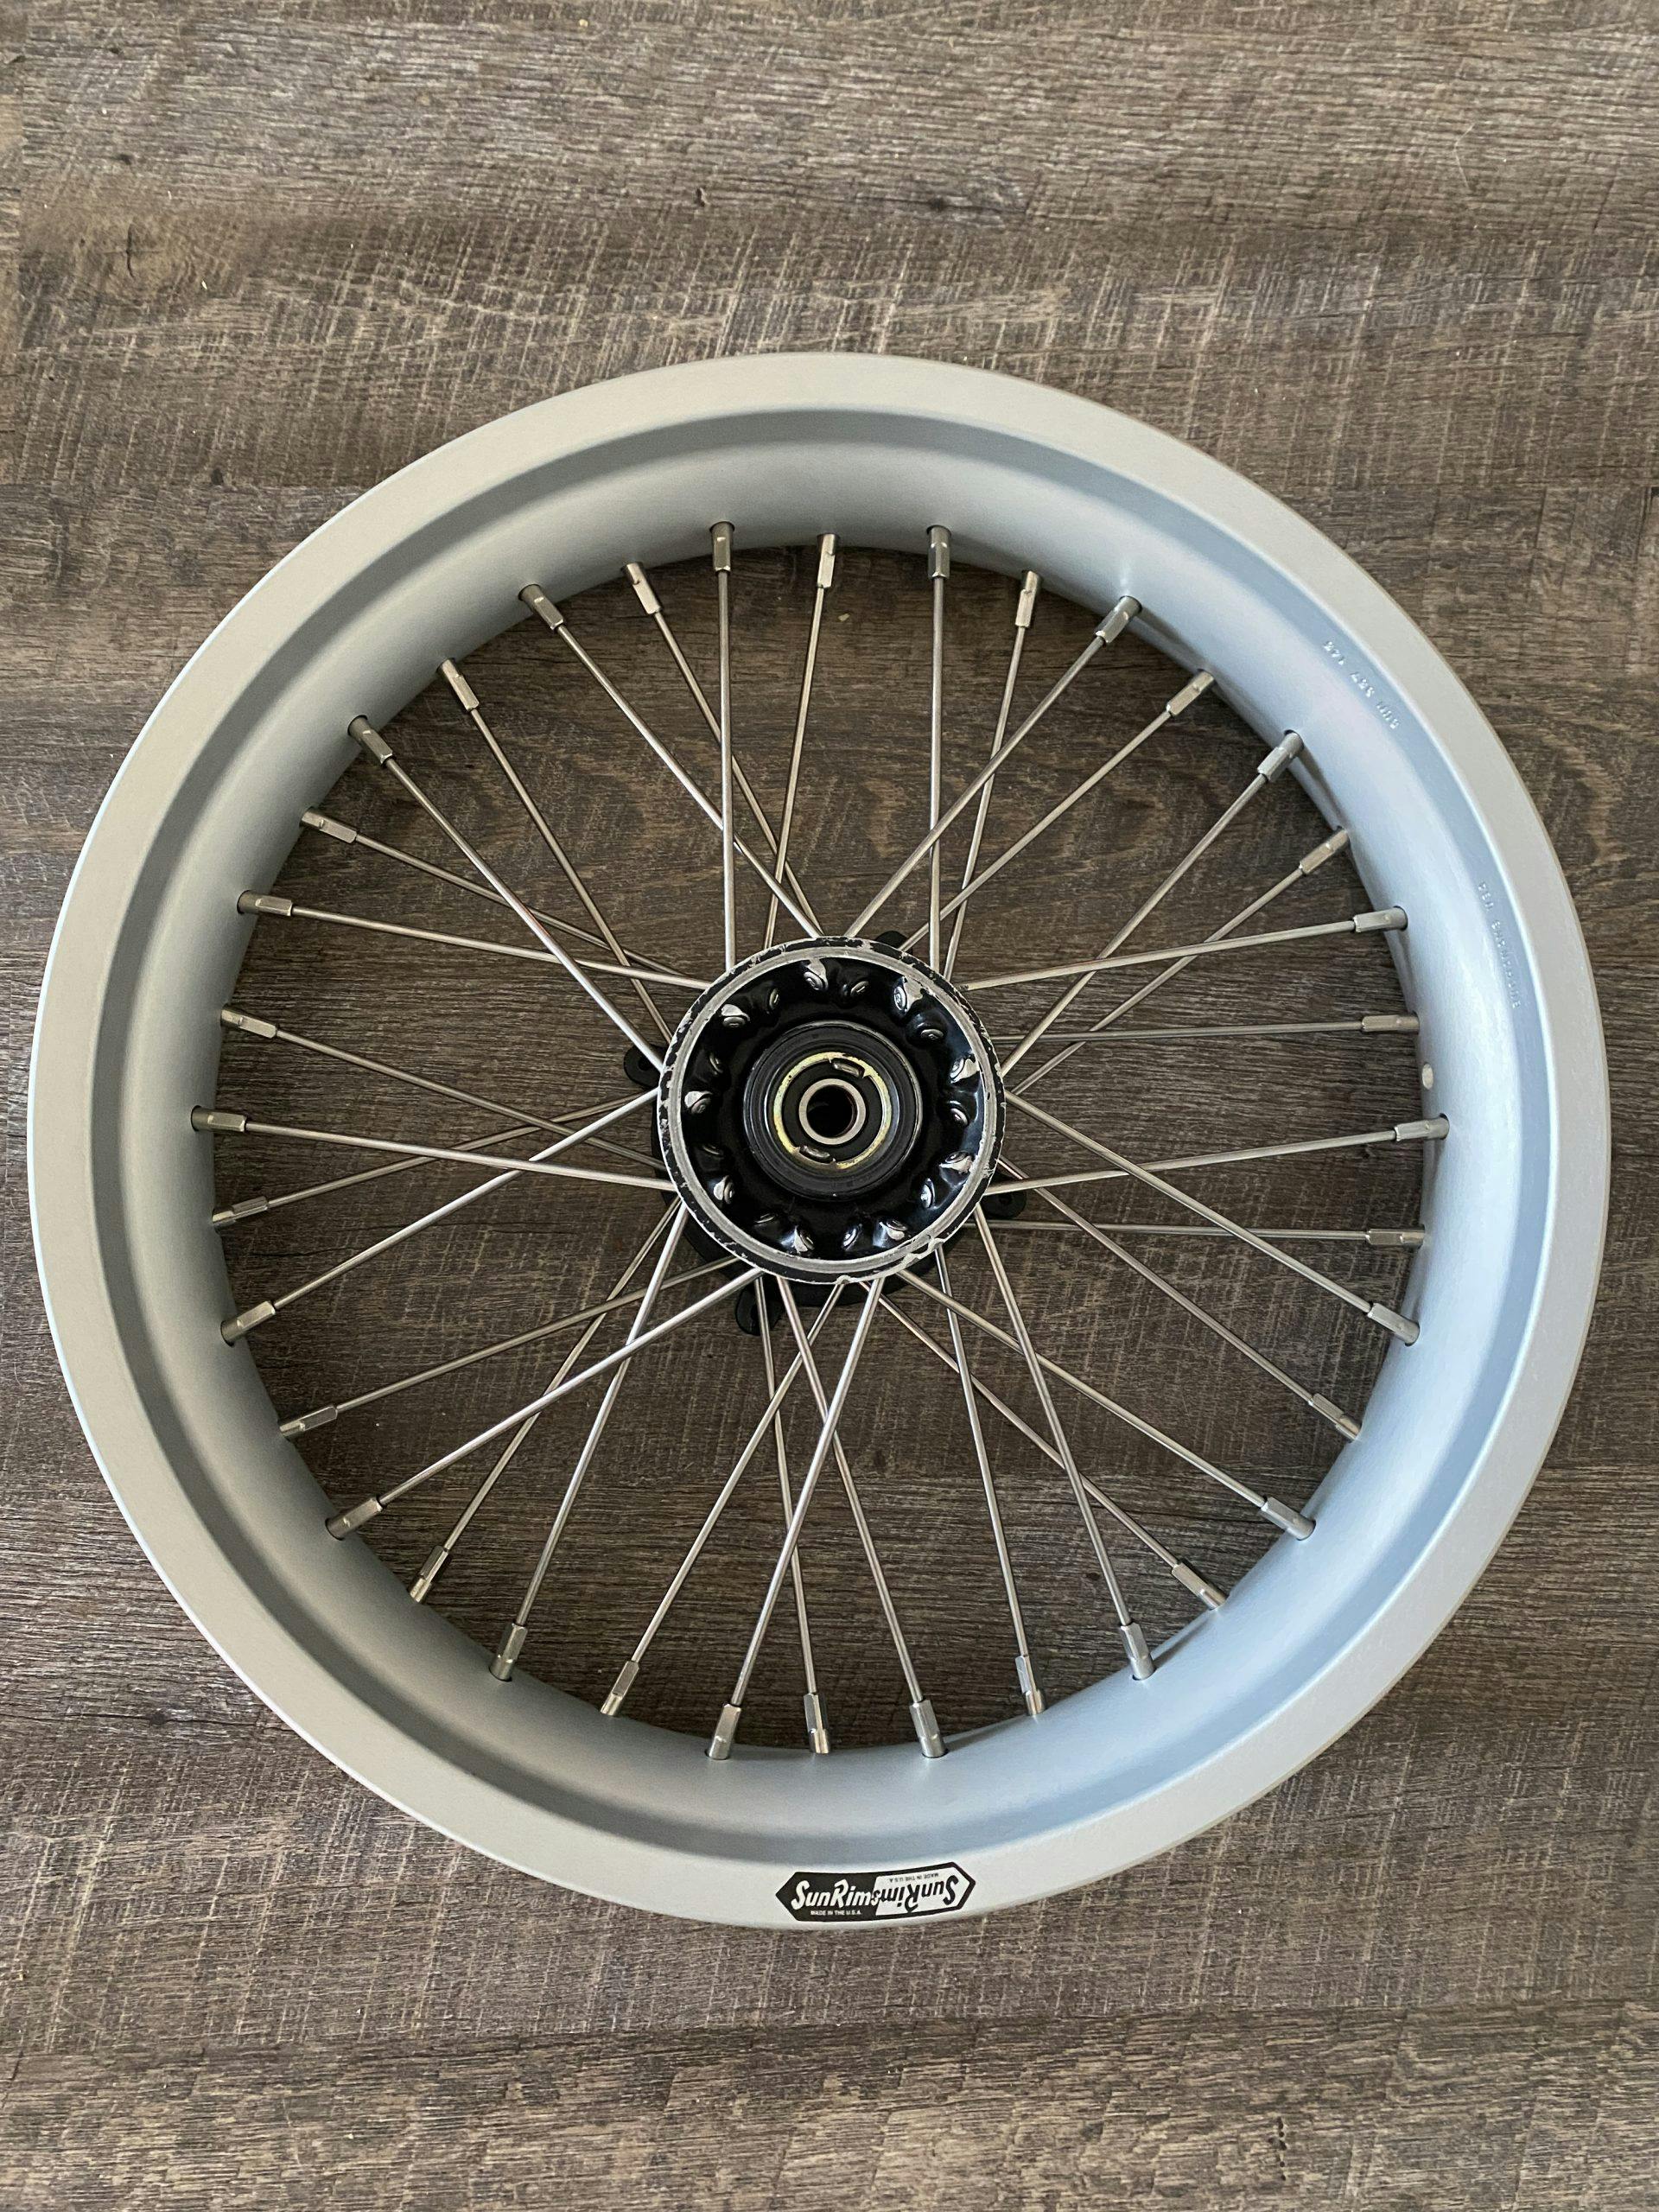 final built motorcycle wheel